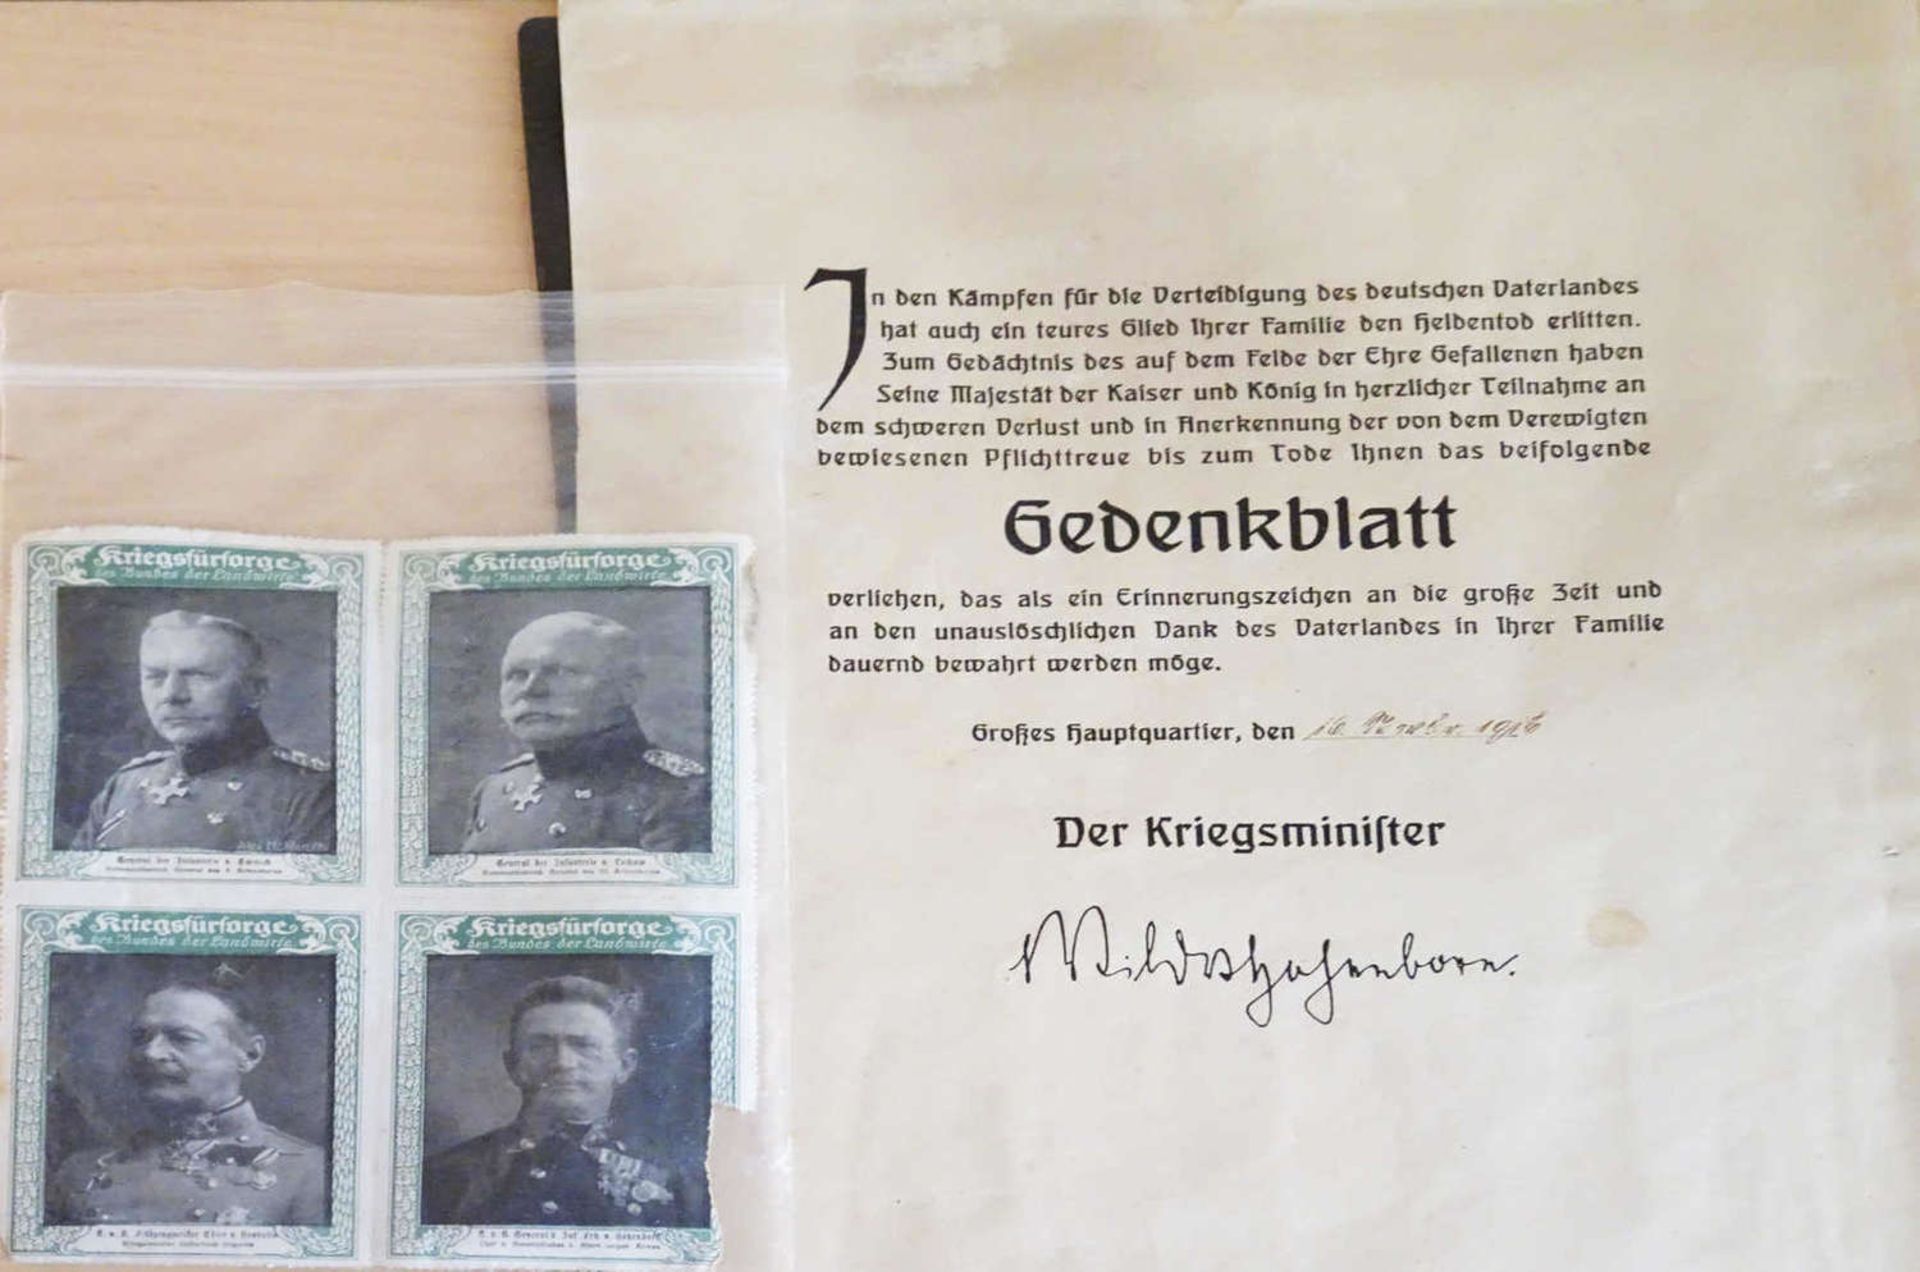 1 Gedenkblatt 1. Weltkrieg, Verleihung des Erinnerungszeichens1 commemorative sheet 1st World War,